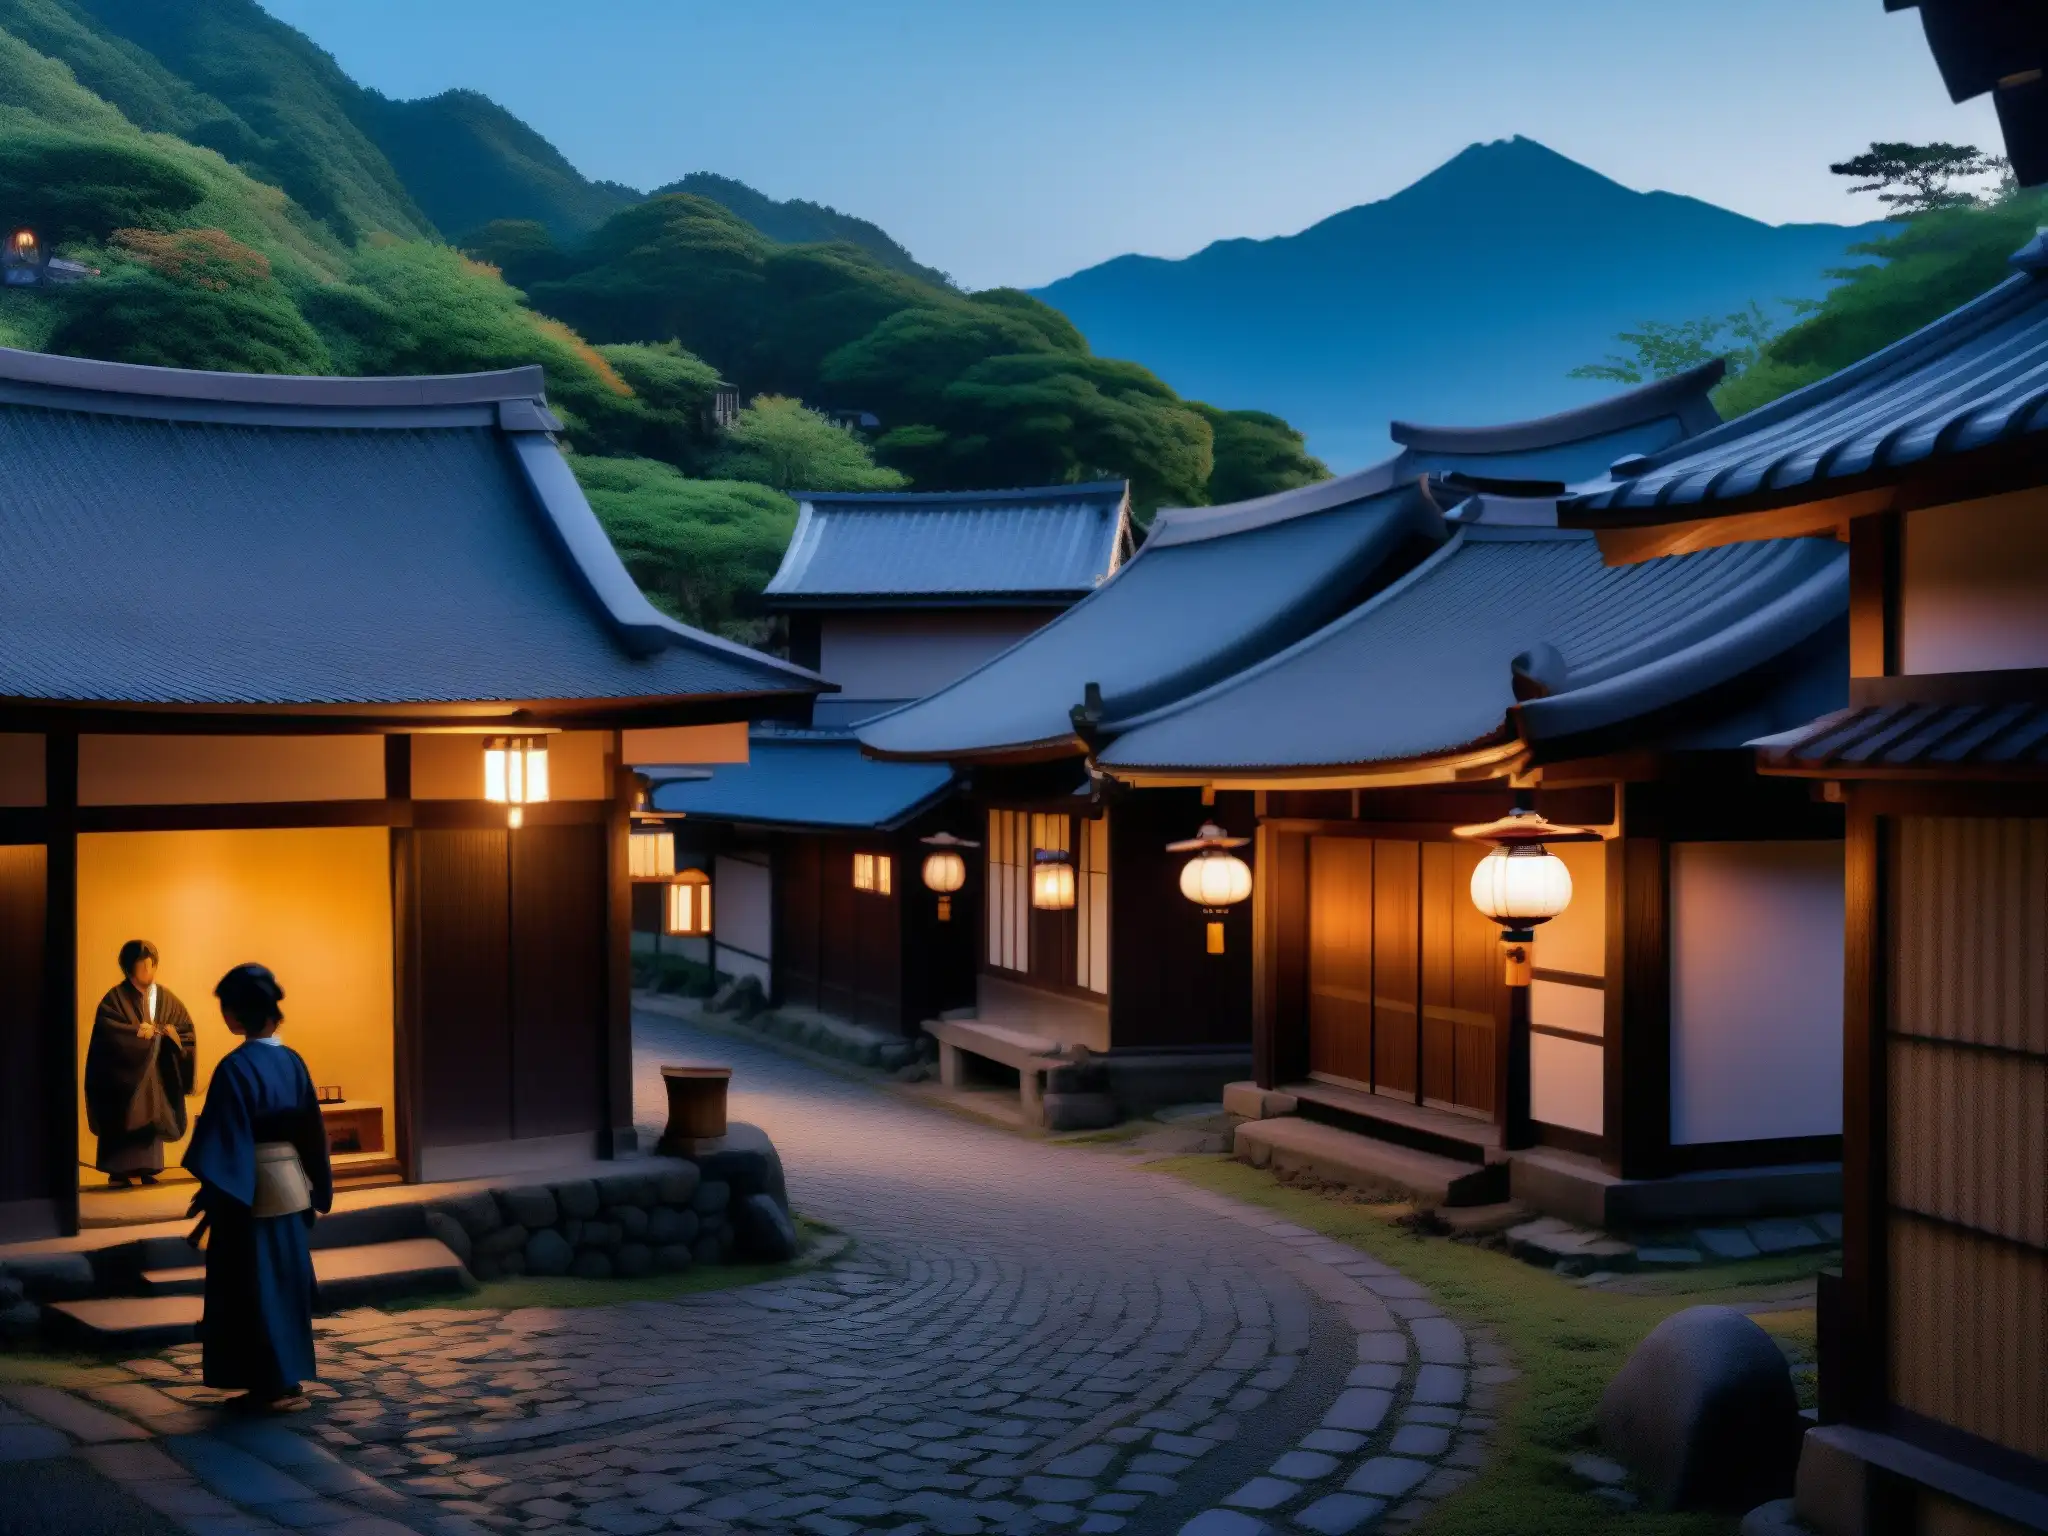 Una imagen inquietante de un pueblo japonés al atardecer, con casas de madera tradicionales y lugareños sombríos reunidos alrededor de un santuario